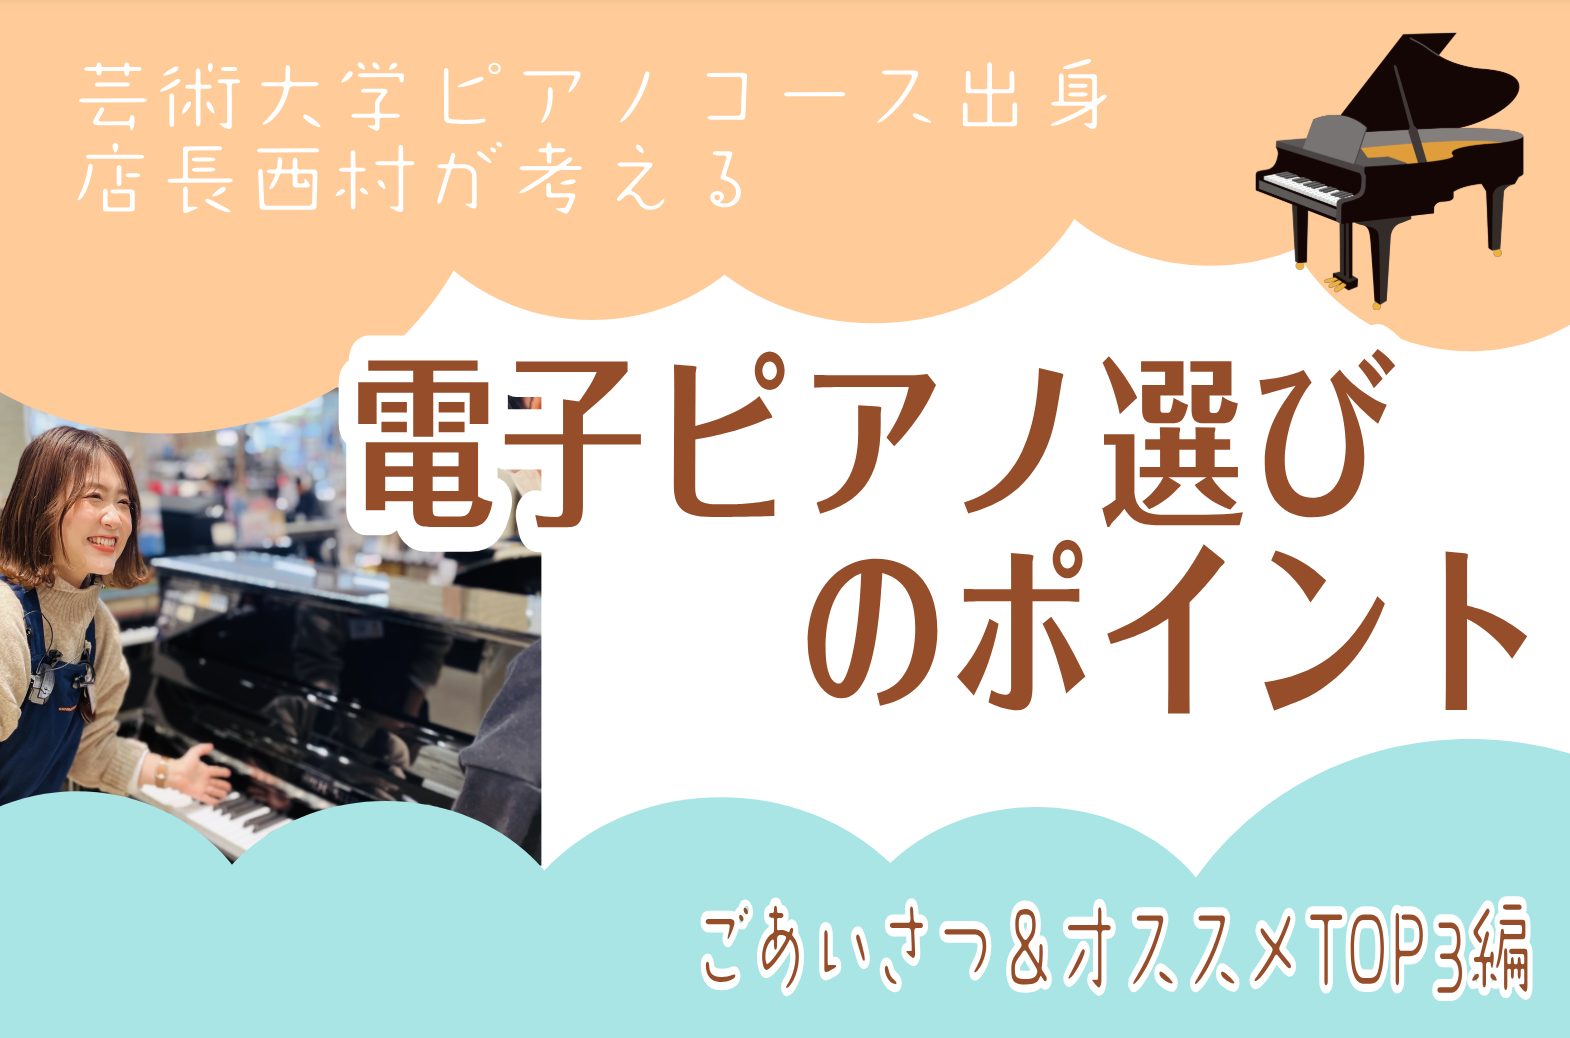 電子ピアノと一言にいってもメーカー、価格、色々あって選び方が分からない、、。そんな方に向けて大阪芸術大学ピアノコース出身の店長西村が考える、ピアノ選びのポイント・オススメ機種を紹介いたします。こちらのページでは私の自己紹介と電子ピアノオススメTOP3のご紹介をいたします。 CONTENTS店長西村の […]